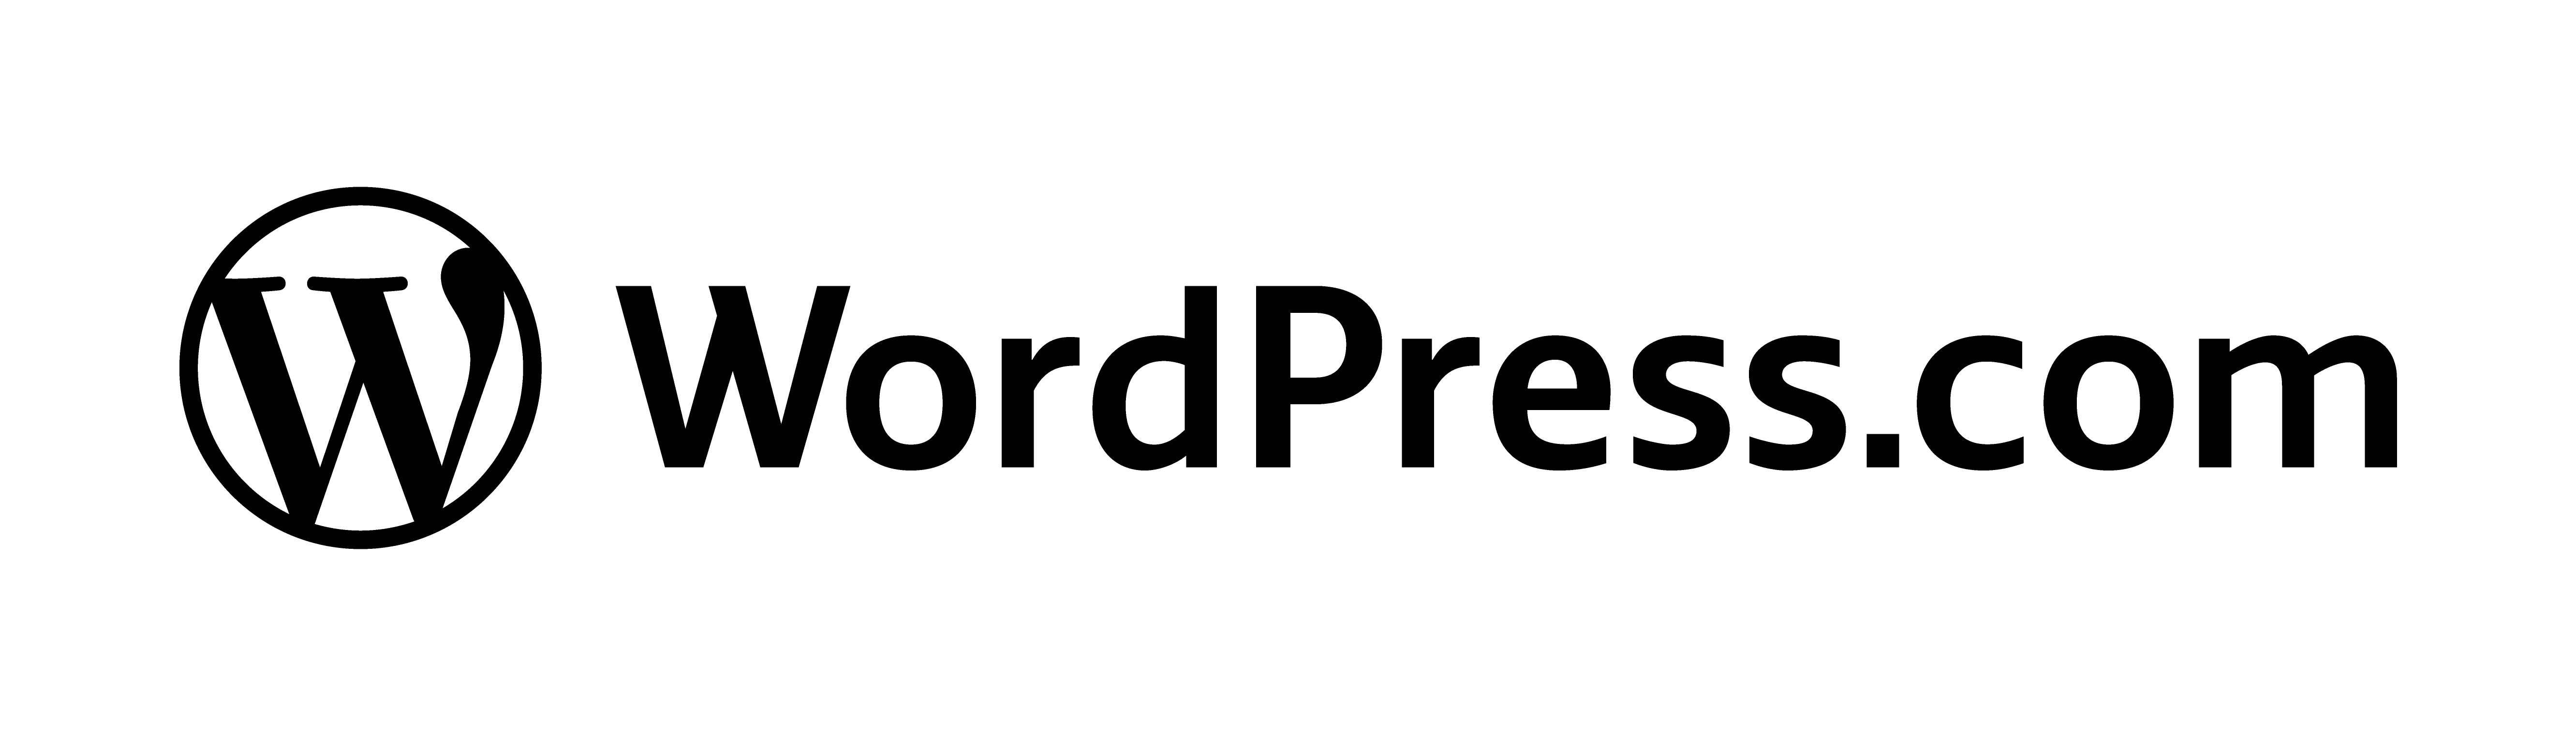 Wordpress.com Logo - Brand Materials